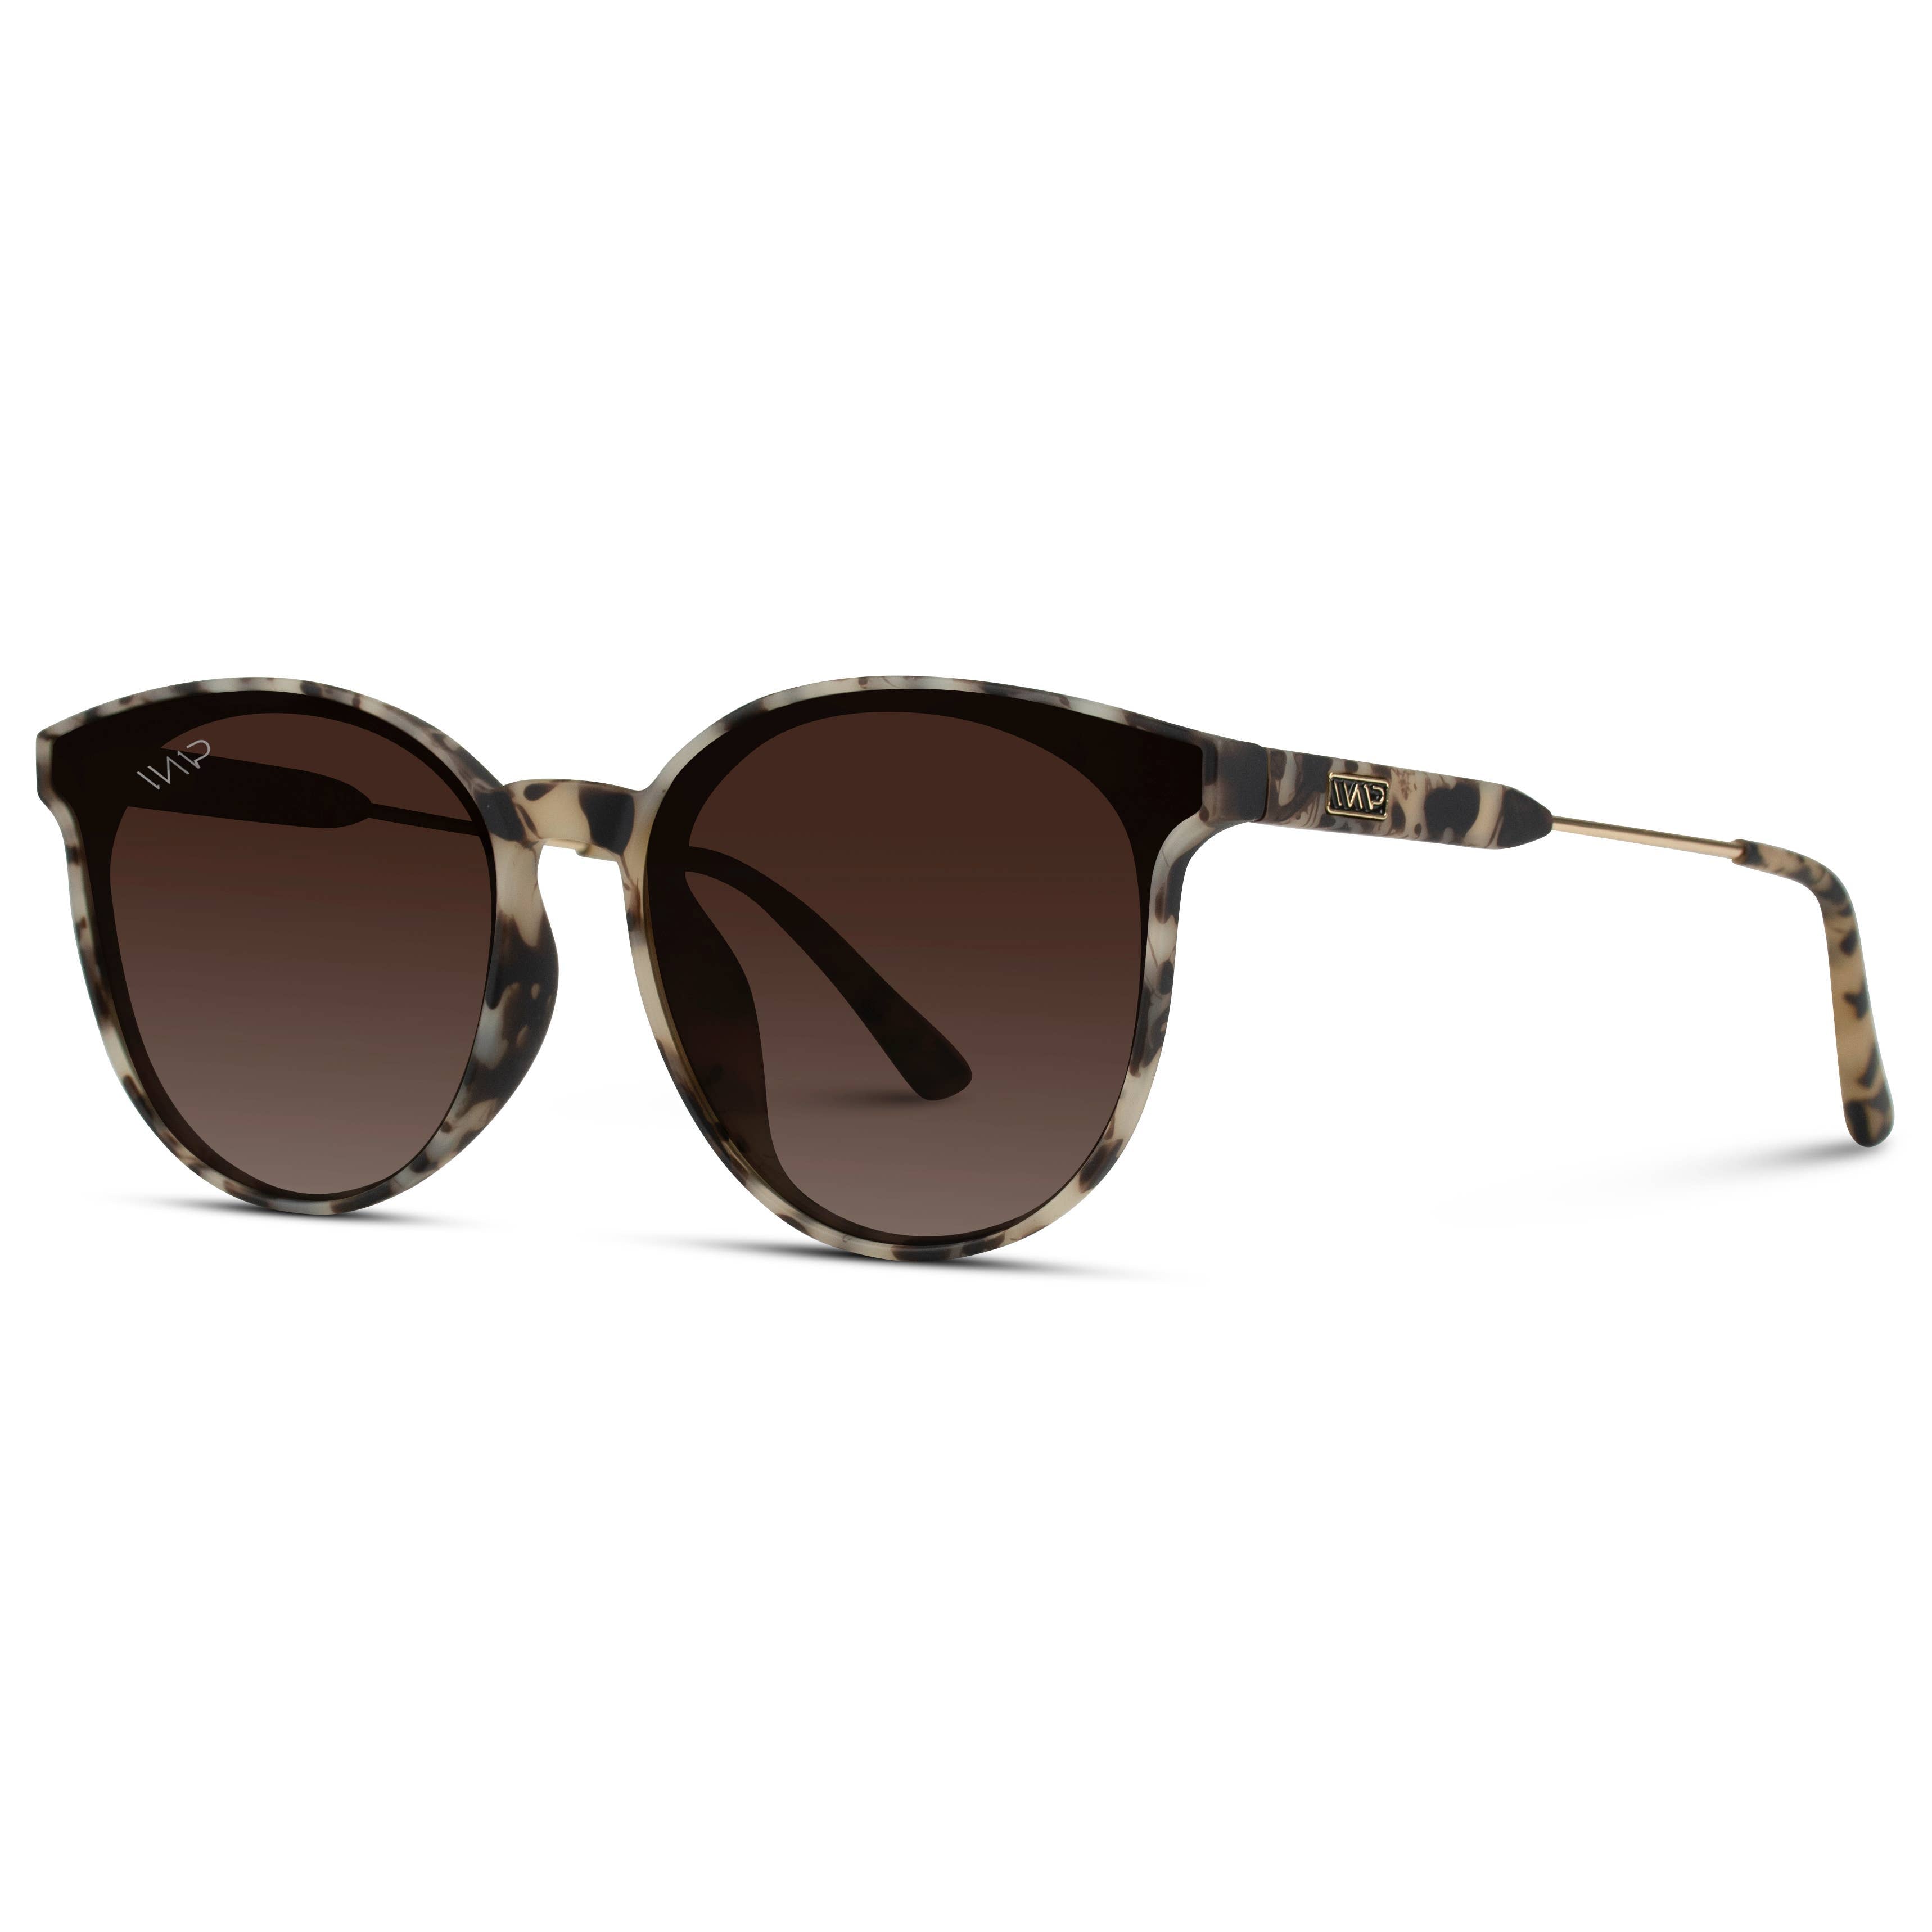 Aubrie Women Round Fashion Modern Sunglasses: Beige Tortoise Frame/Gradient Brown Lens